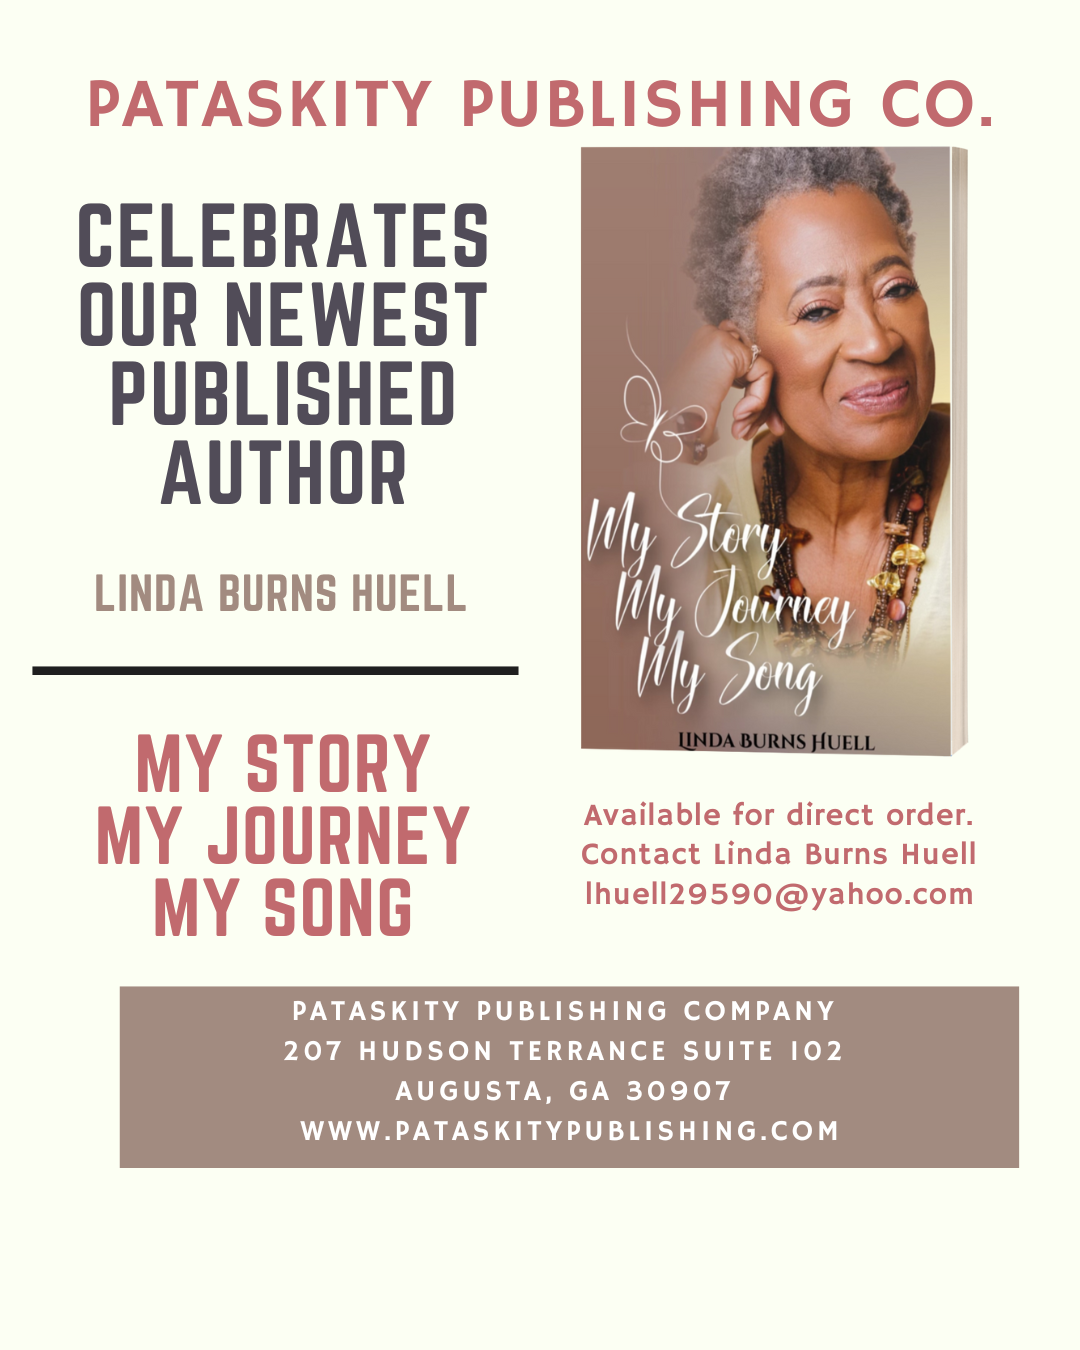 Pataskity Publishing Company Celebrates Linda Burns Huell!